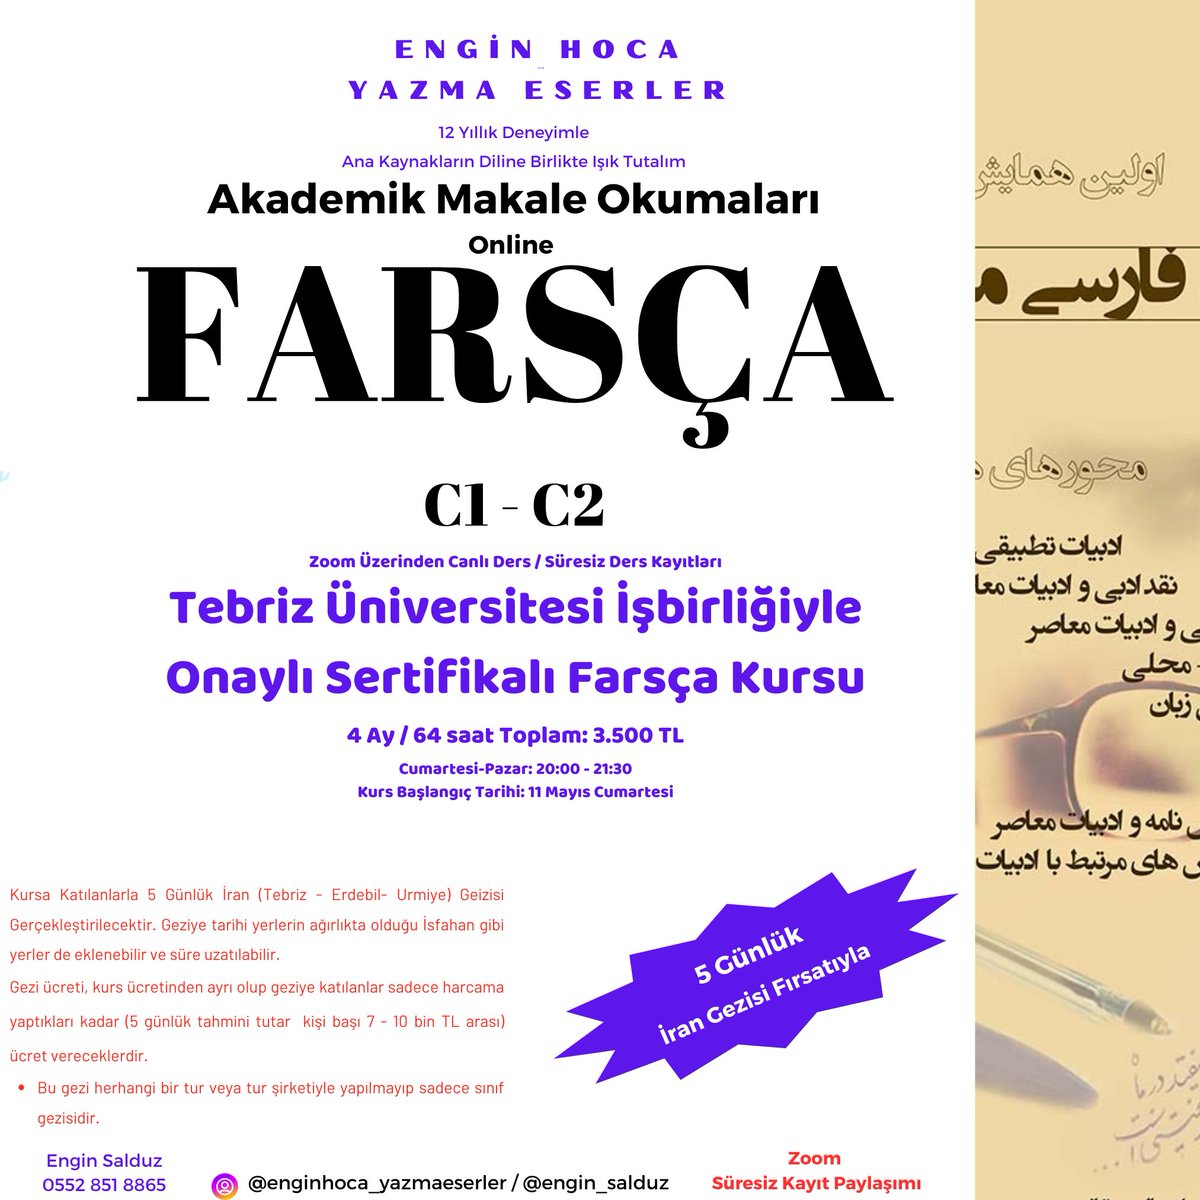 Tebriz Üniversitesi onaylı sertifikalı 'Online Farsça Akademik Makale Okumaları Kursu: C1-C2'. Kurs sonunda başarılı olanlara üniversite onaylı sertifika verilecek. Kursa kayıt için aşağıdaki formu doldurabilirsiniz.
docs.google.com/forms/d/e/1FAI…